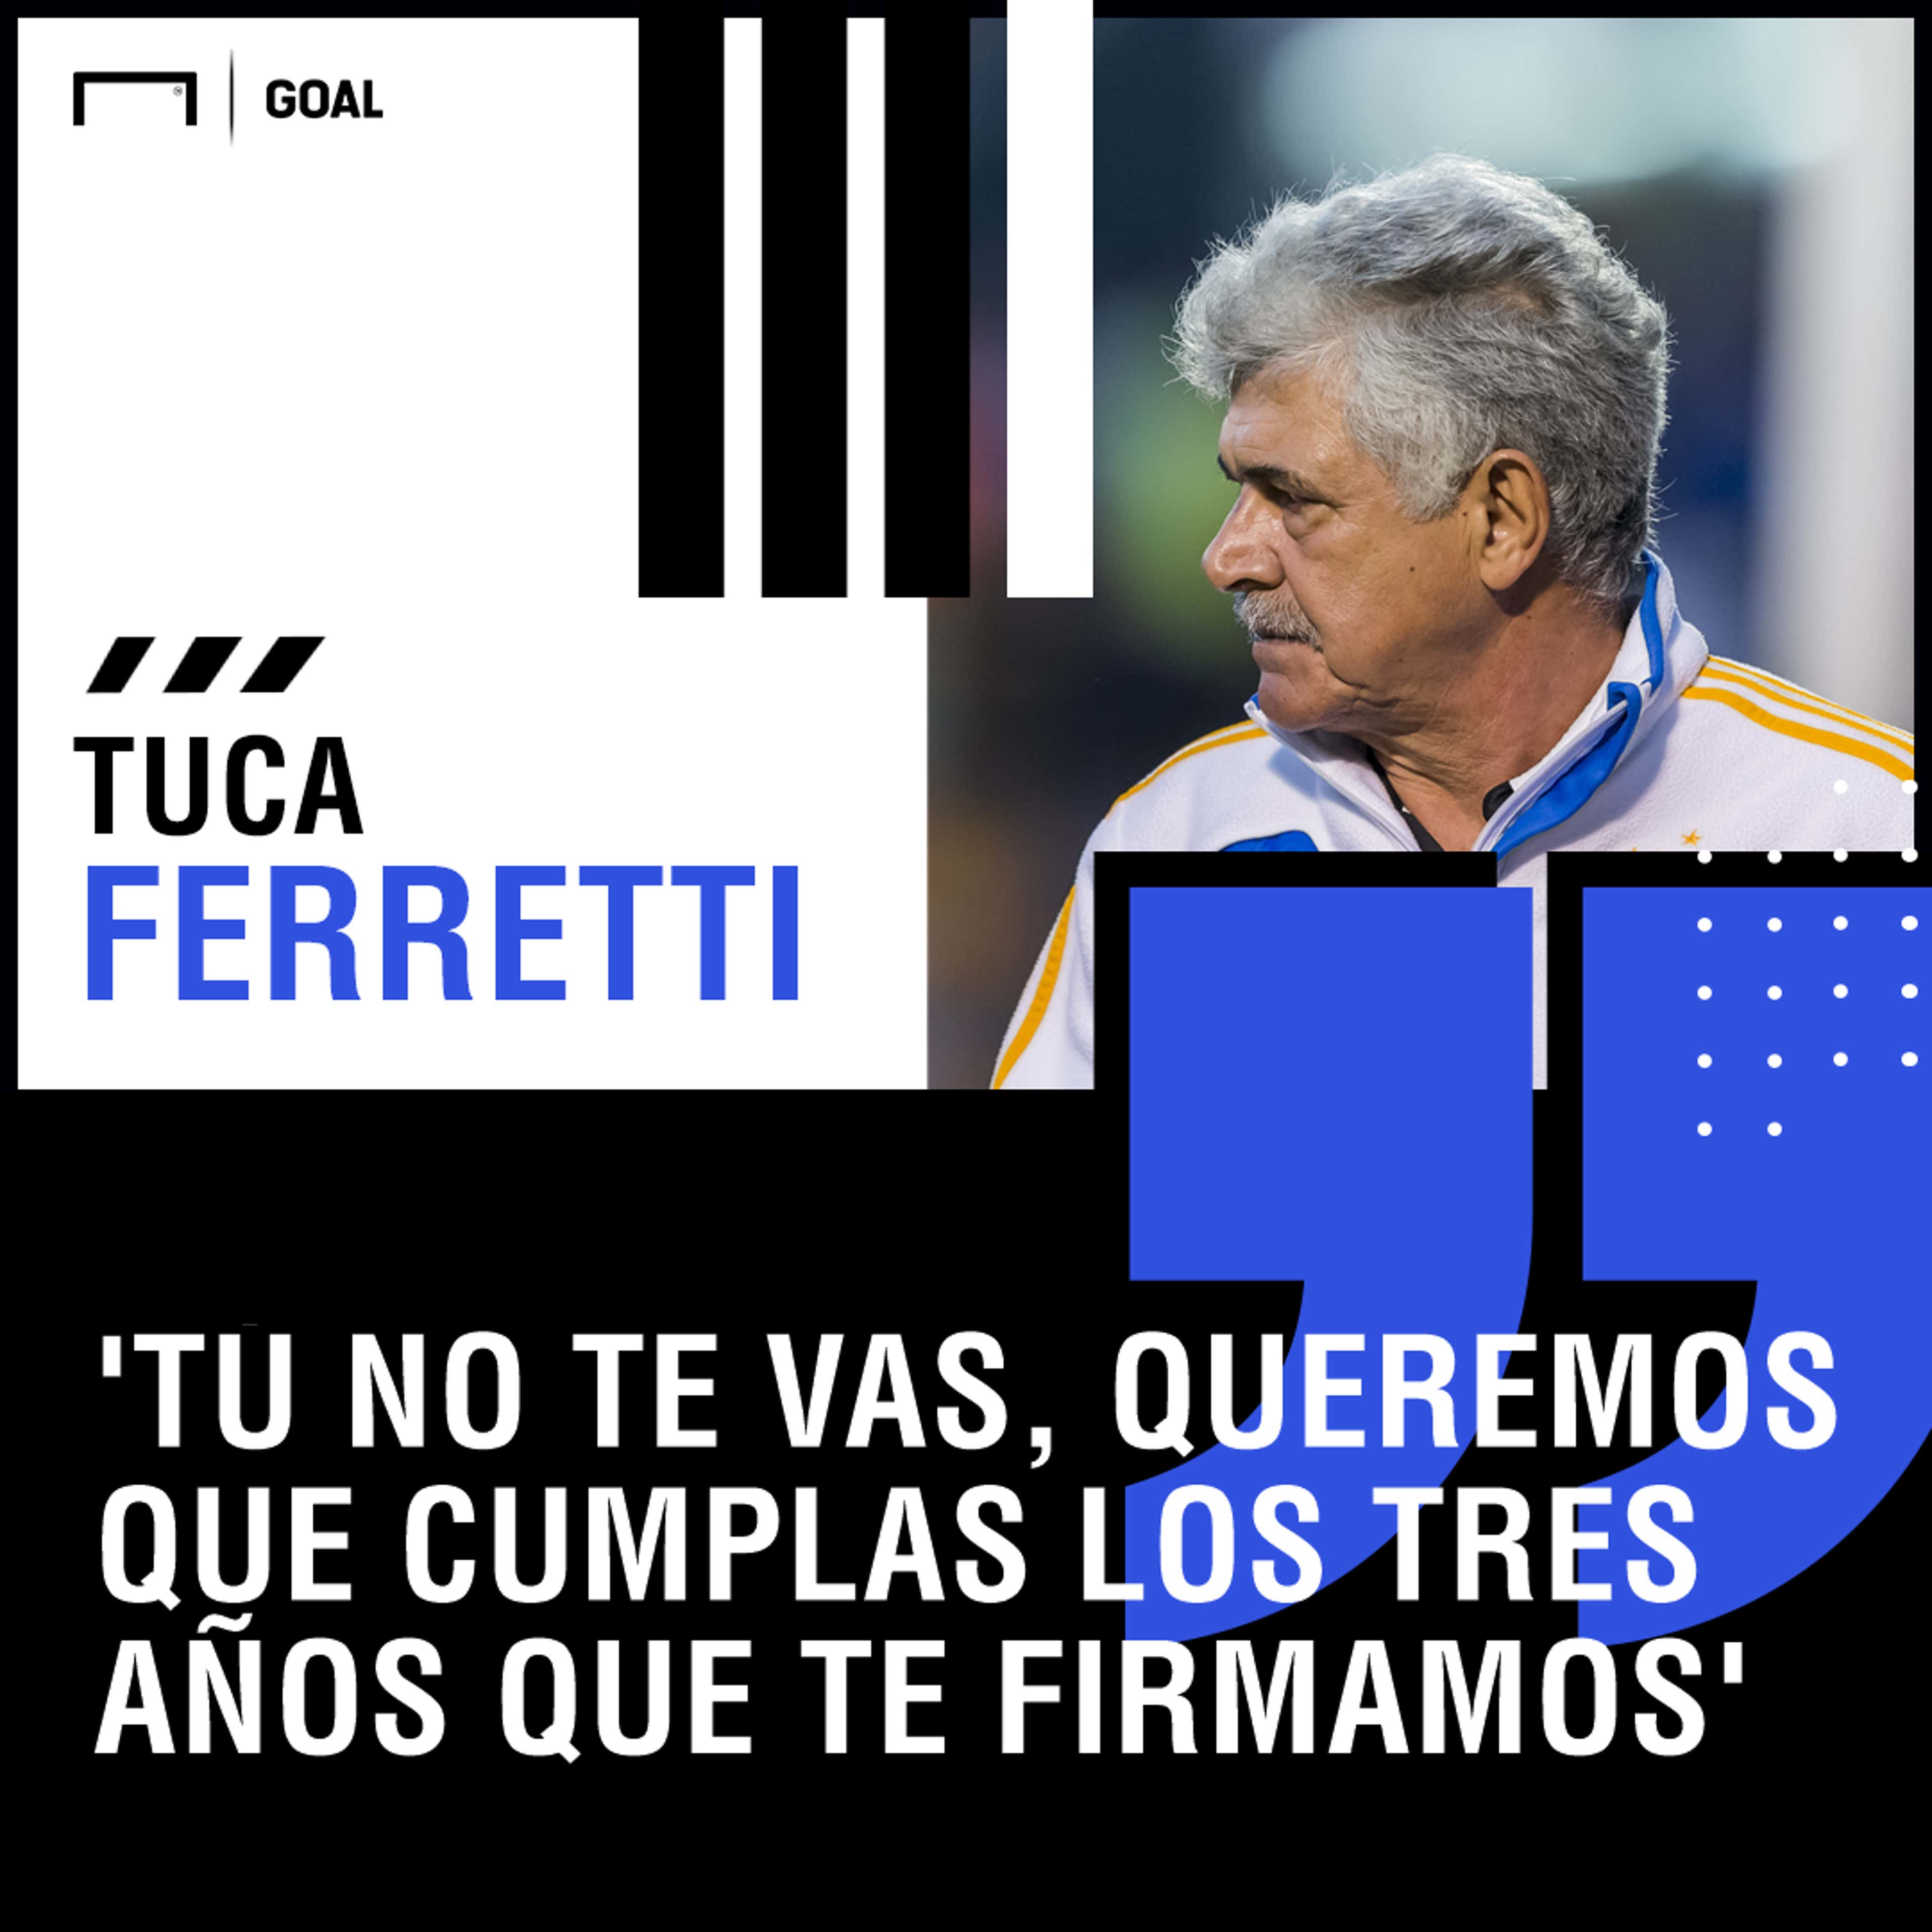 Tuca Ferretti quote